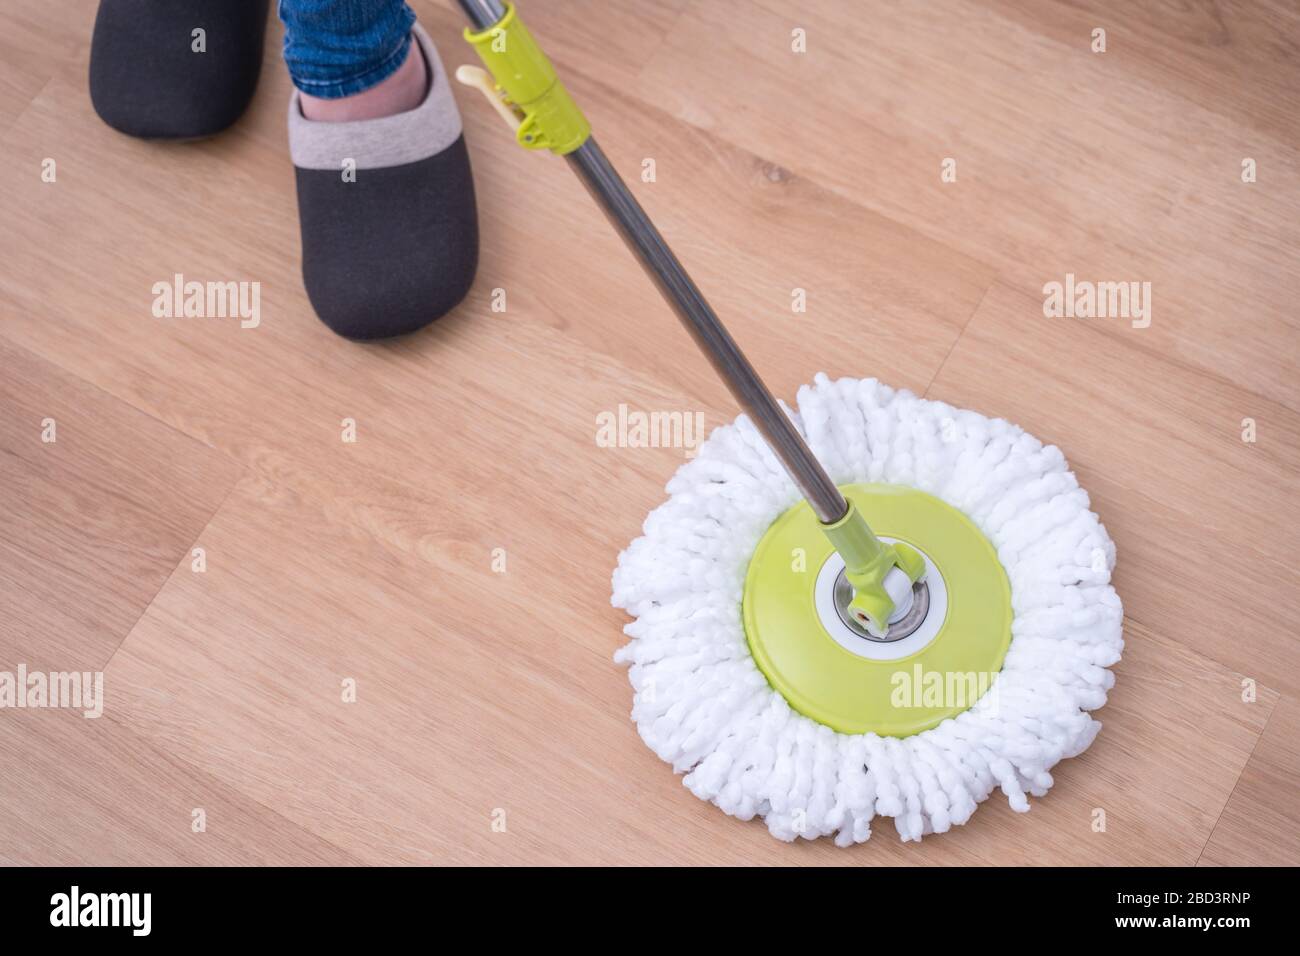 Planchers de balai à franges. Jeune femme laver le sol en bois à la maison  avec un balai à franges, des produits de nettoyage, concept  d'antibactérien, prévention des virus, gros plan Photo